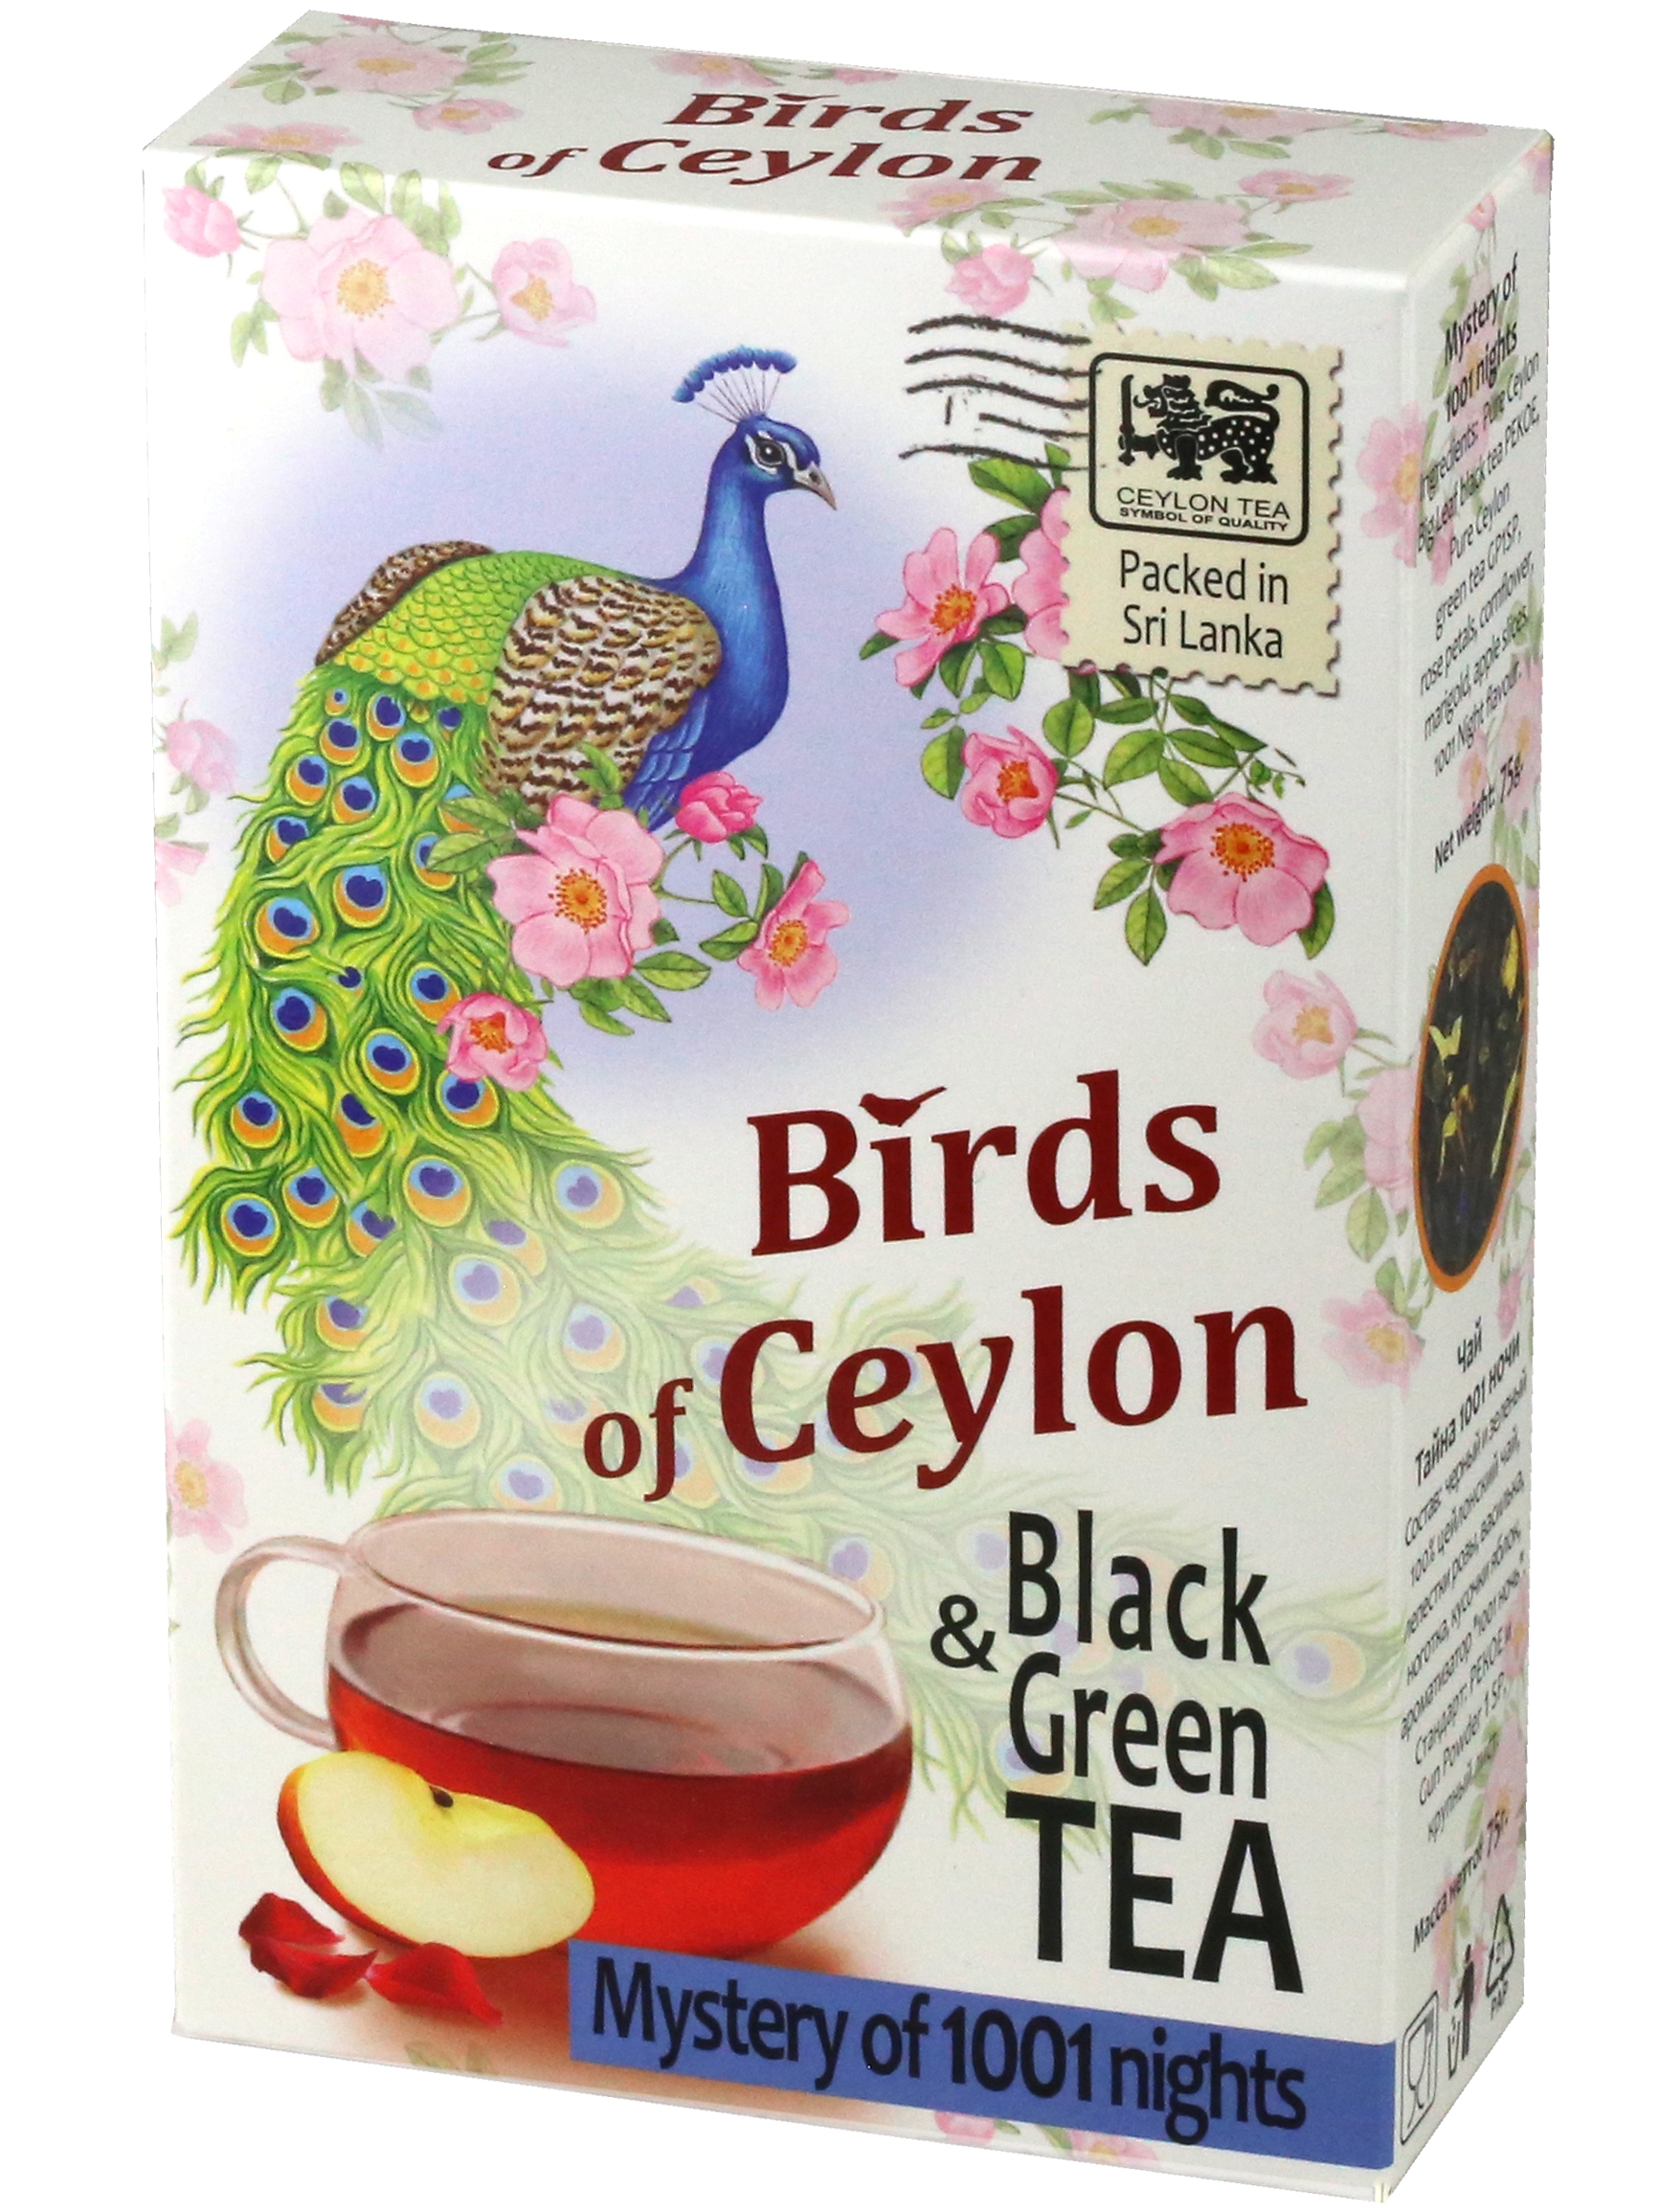 Чай черный и зеленый Тайна 1001 ночи, Птицы Цейлона, Шри-Ланка, 75 гр